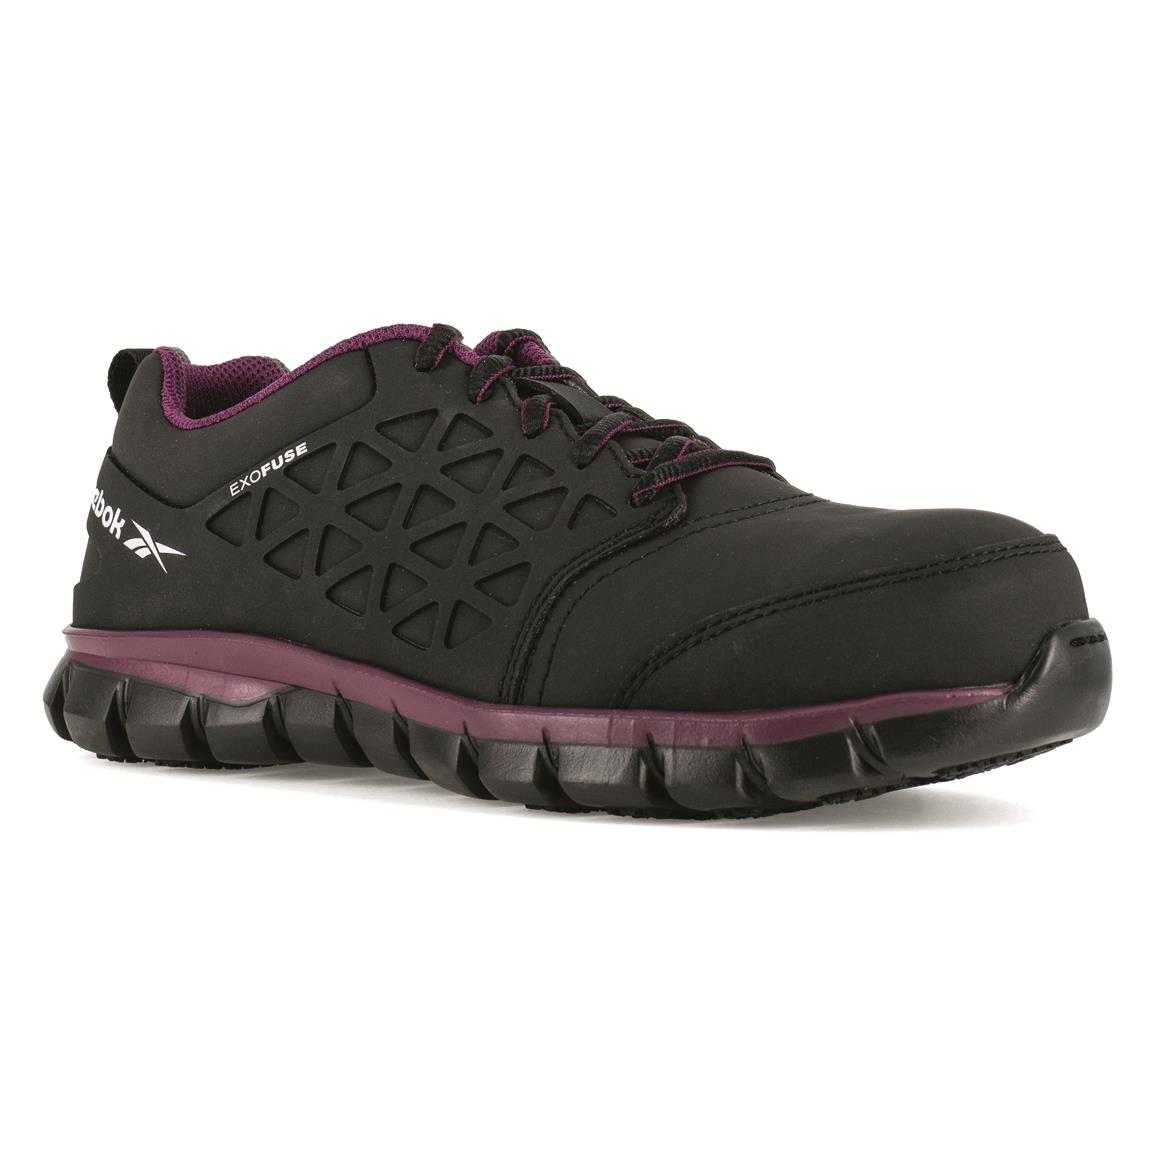 Reebok Women's Sublite Comp Toe Athletic Work Shoes, Black/plum